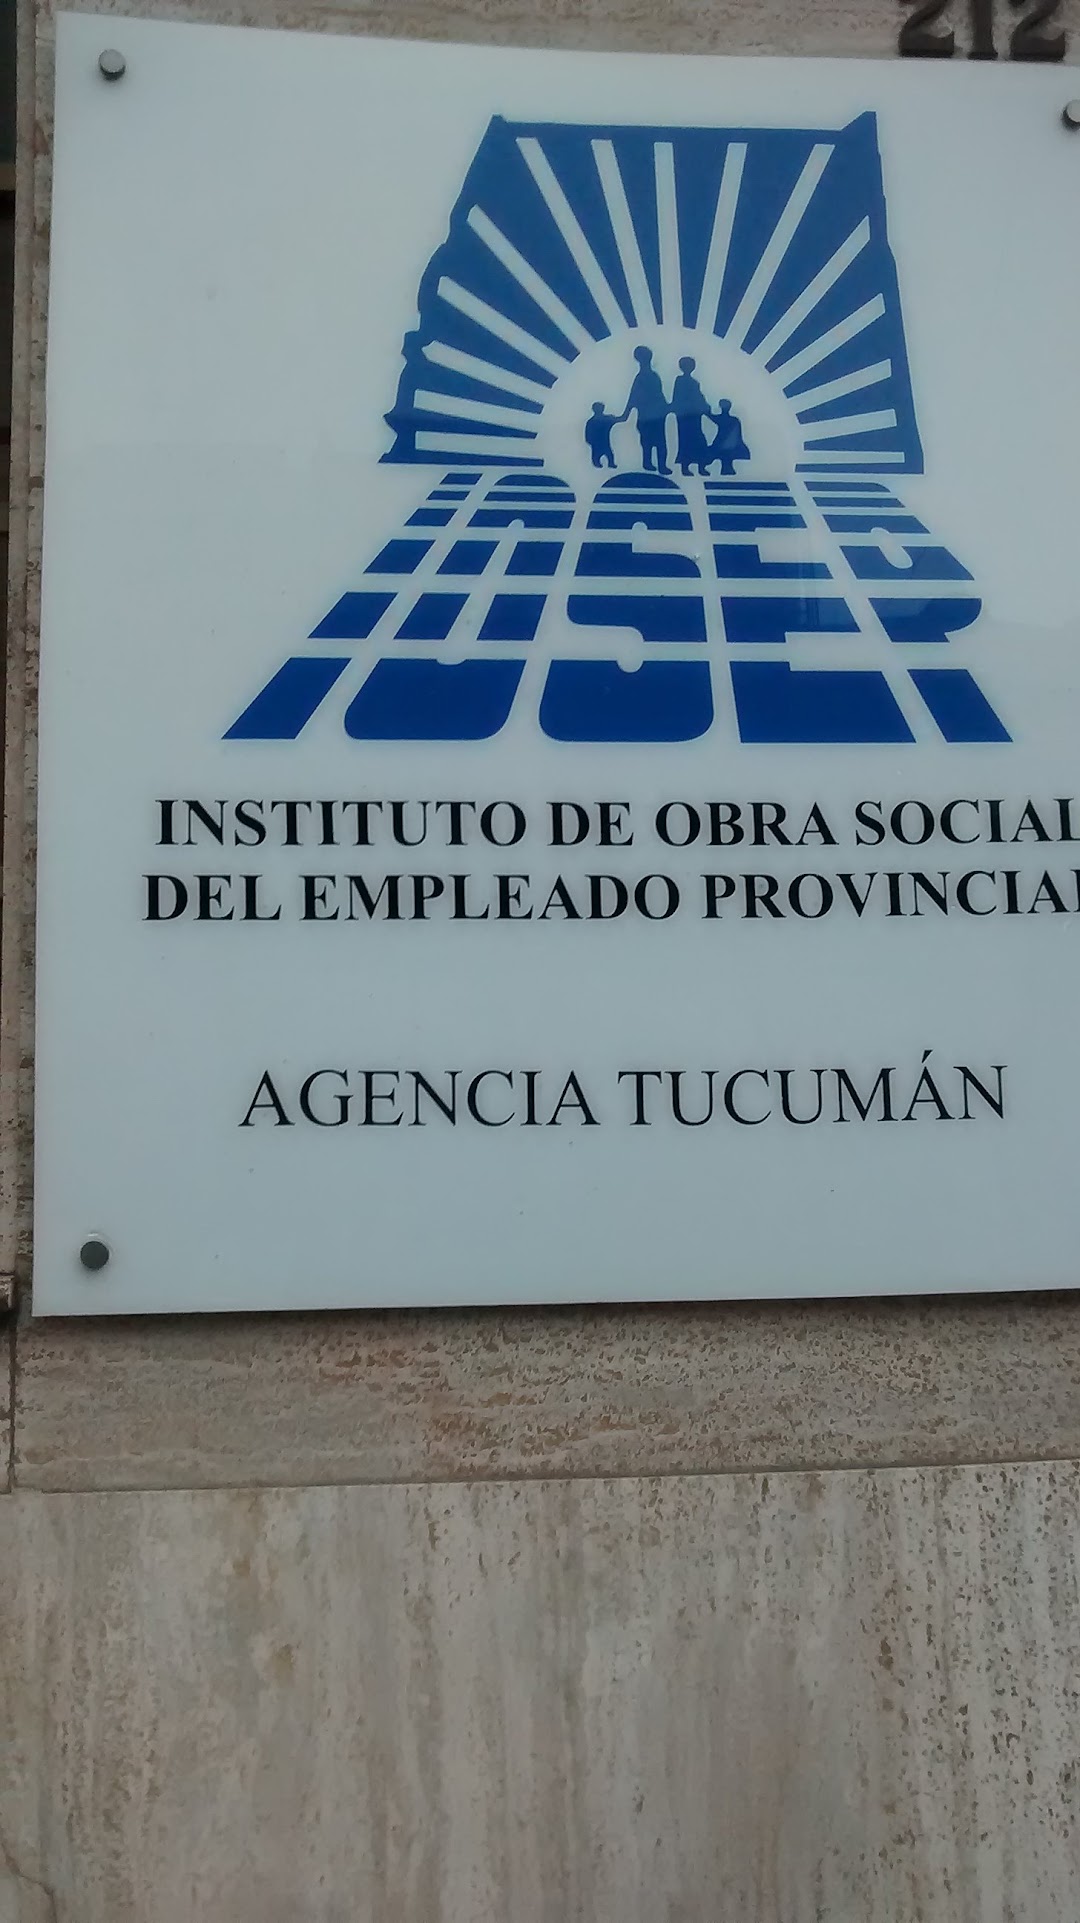 Instituto de Obra Social del Empleado Provincial